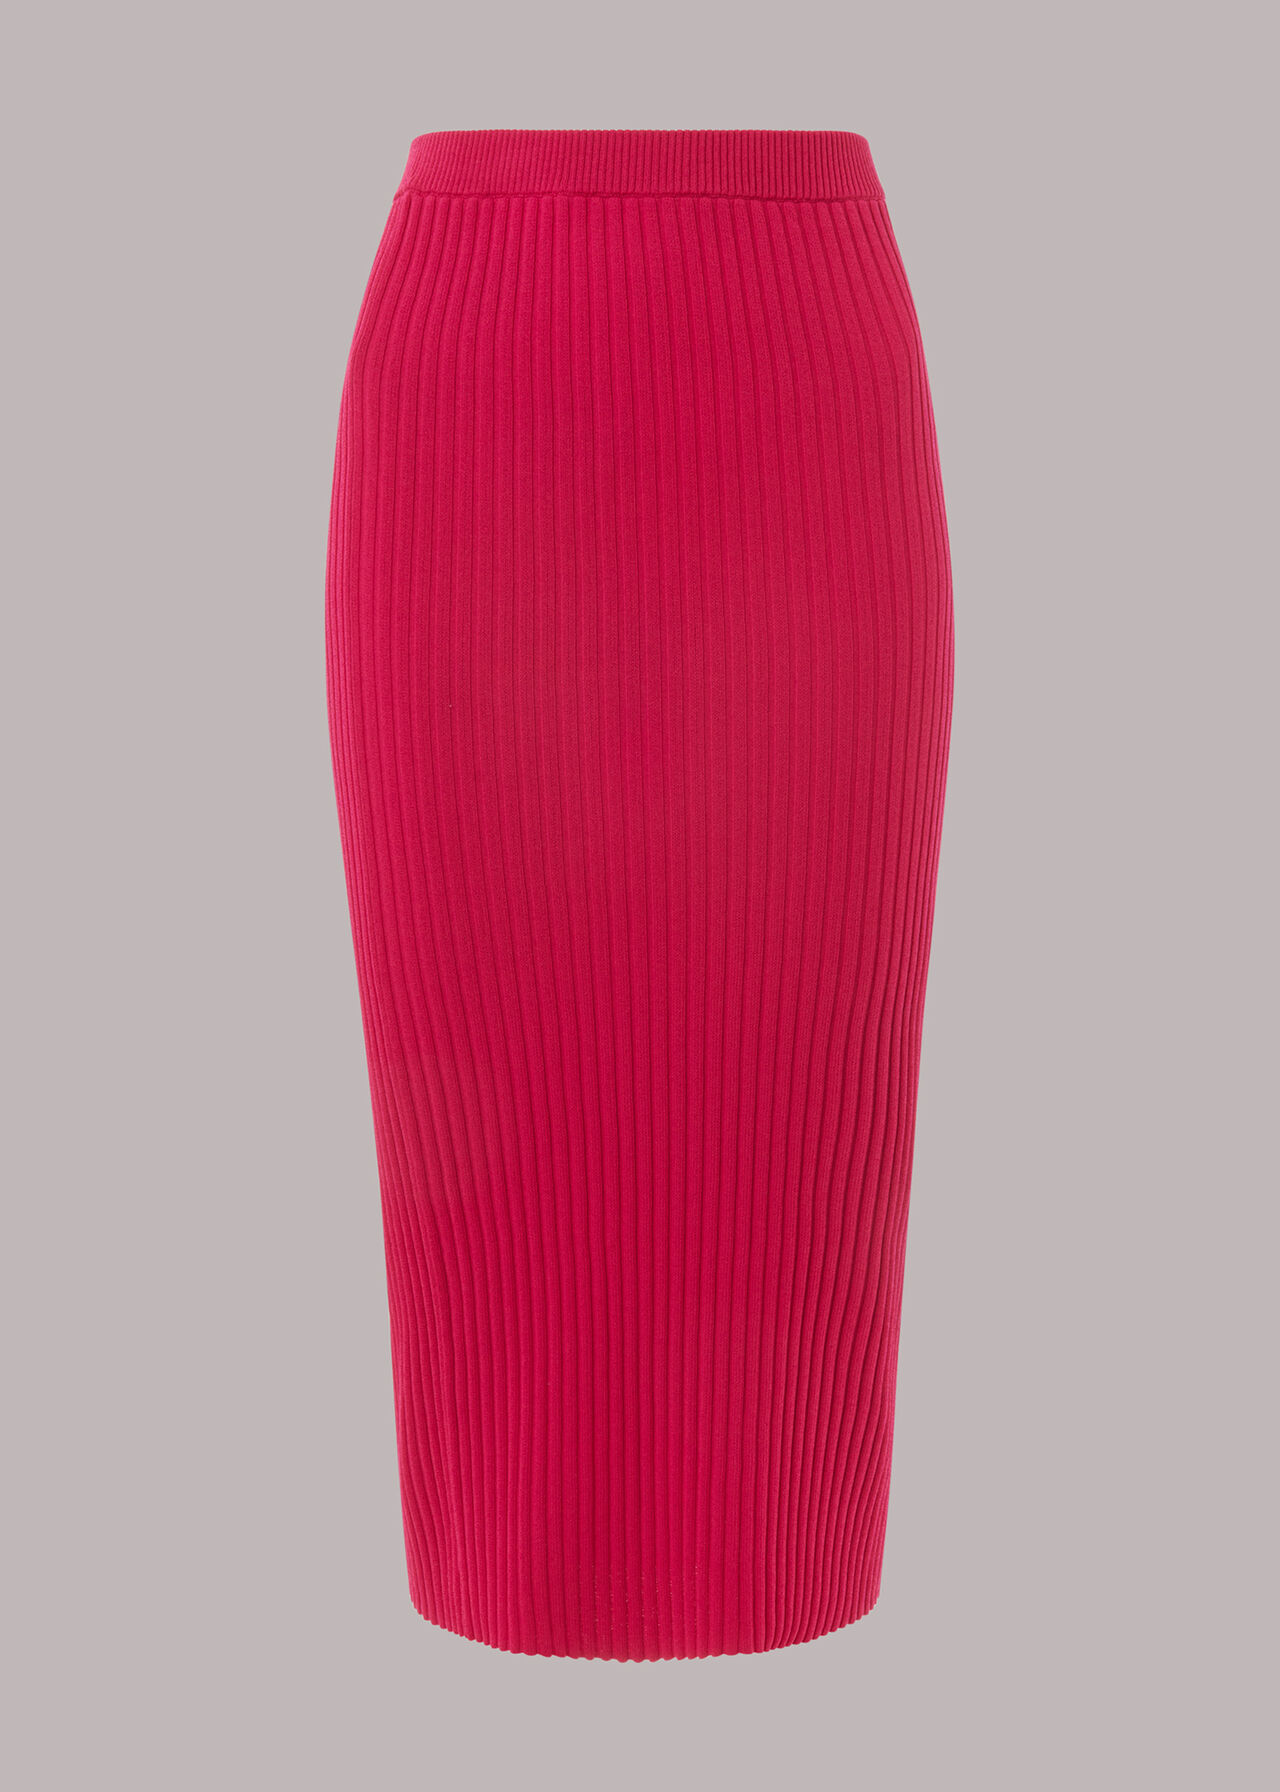 Pink Knitted Column Skirt | WHISTLES